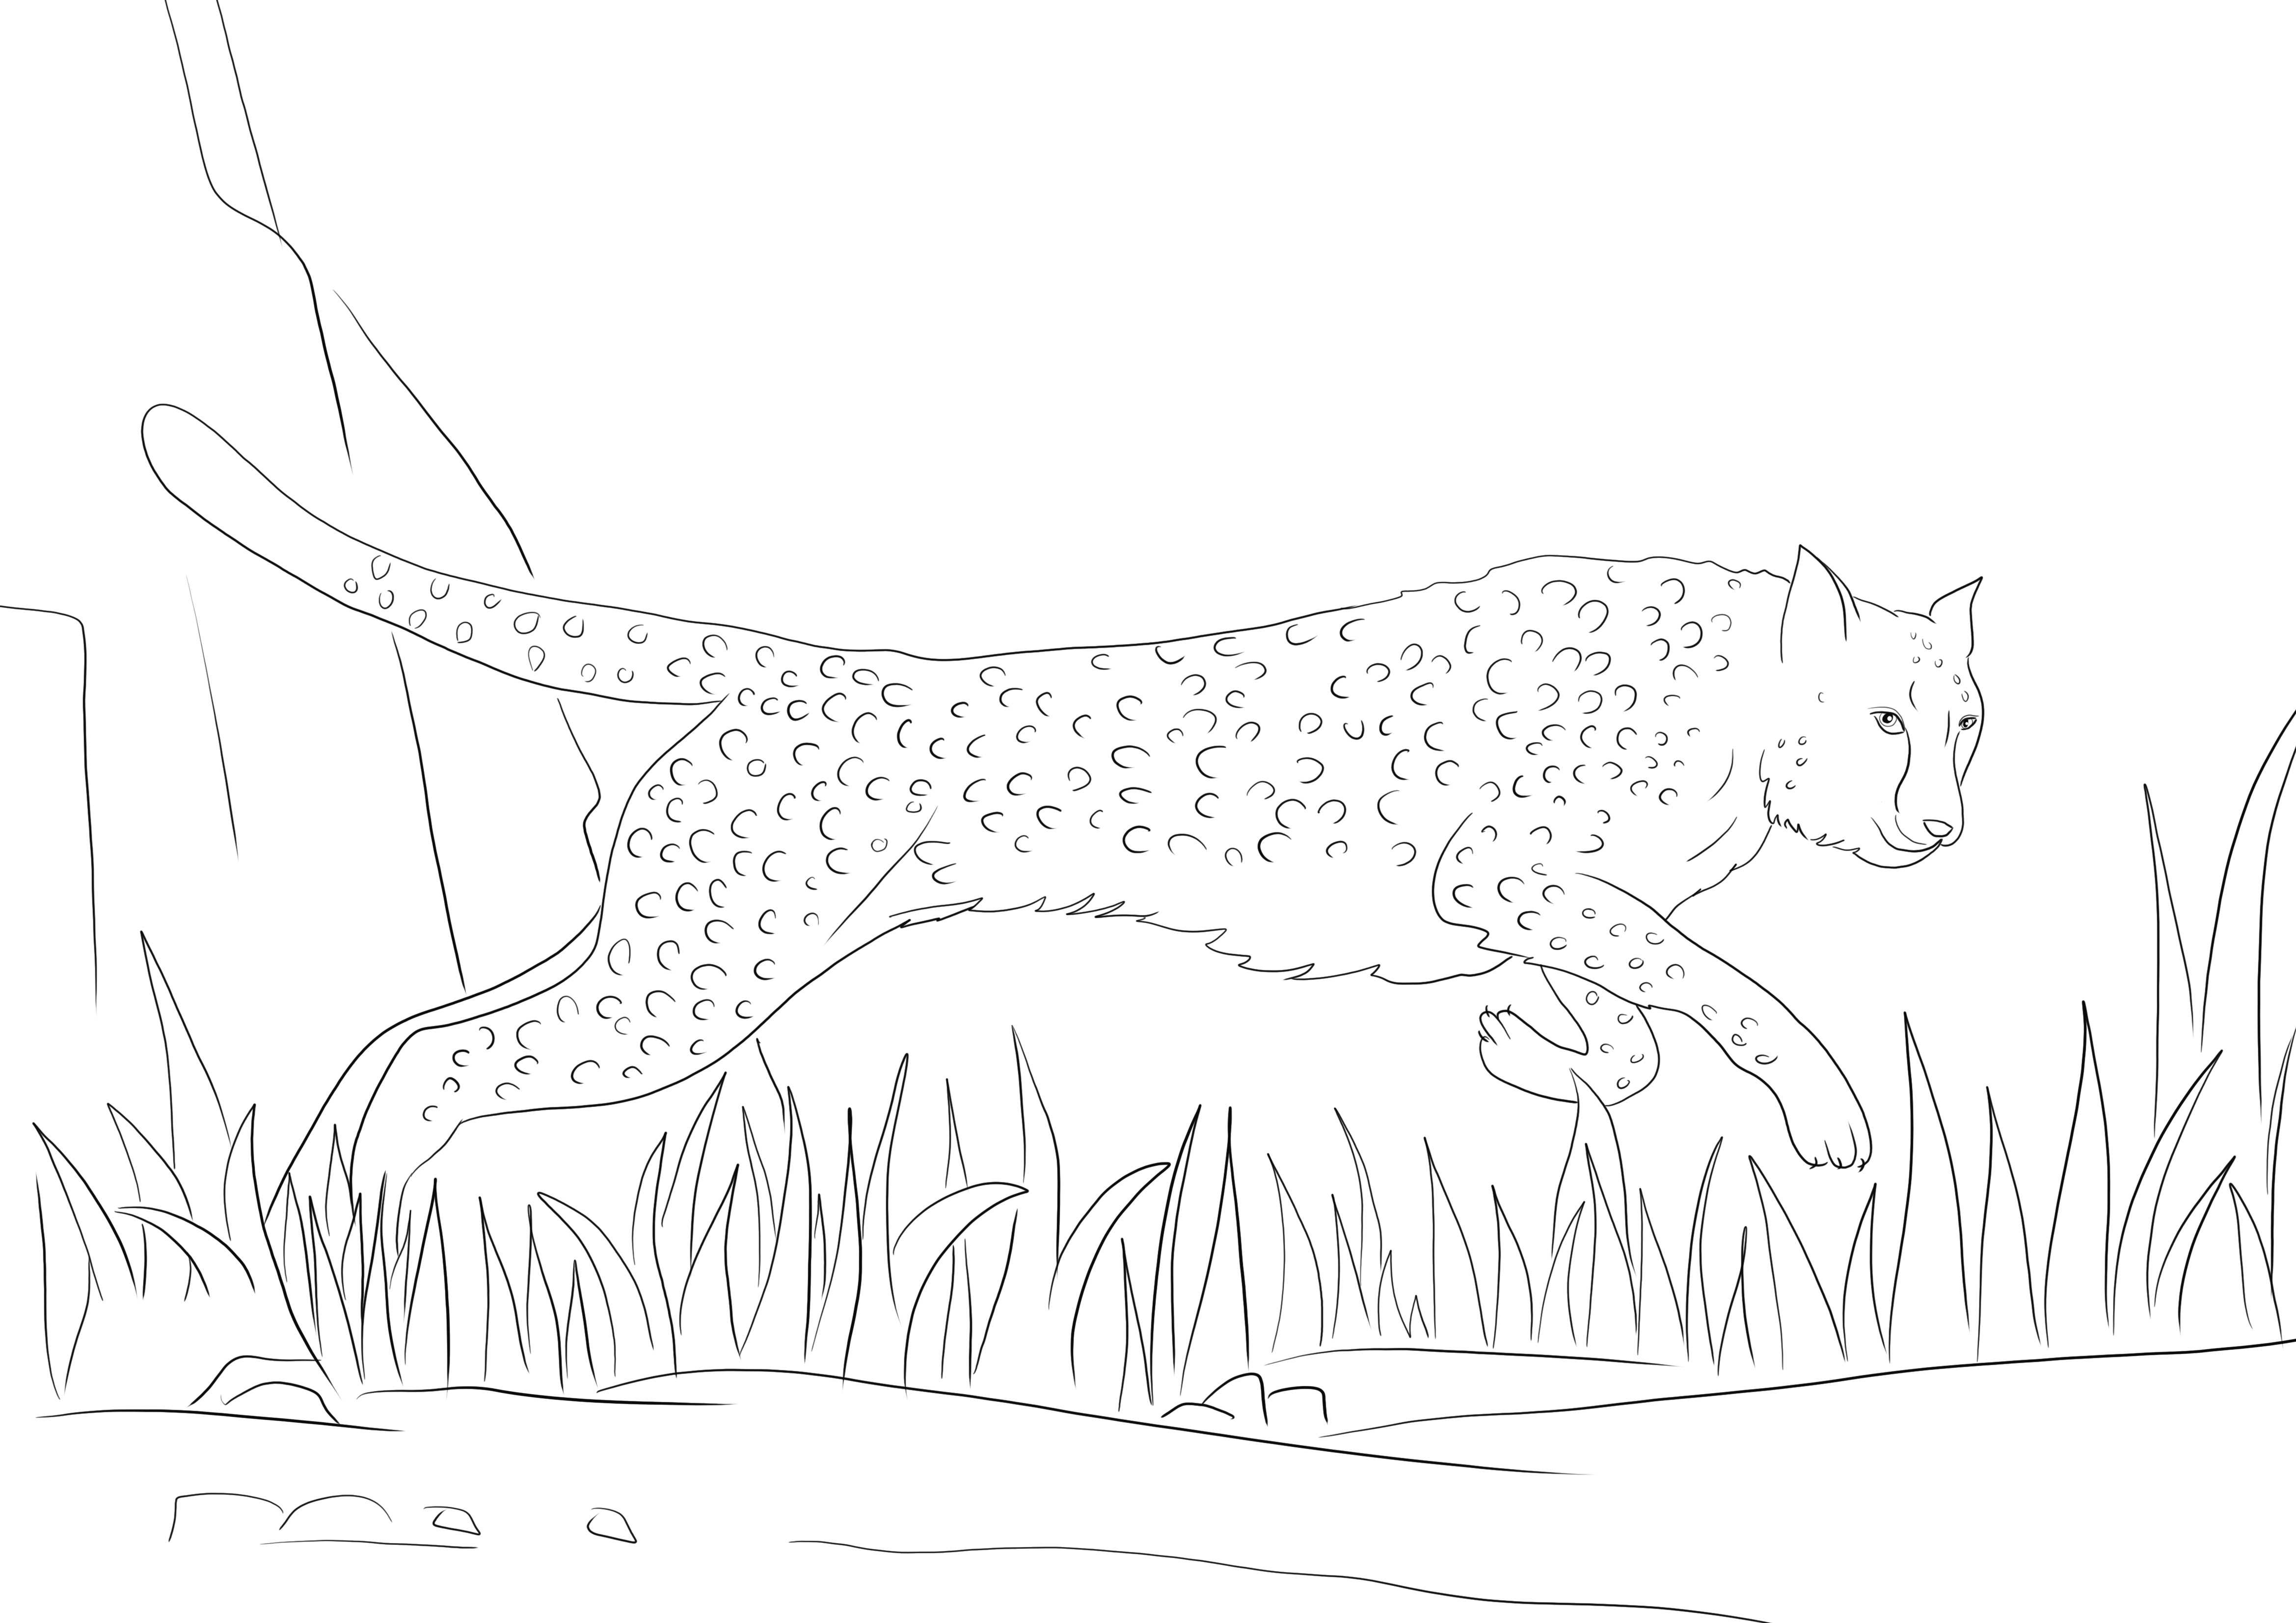 Gepard biegnie i czeka na wydrukowanie za darmo i pokolorowanie przez dzieci